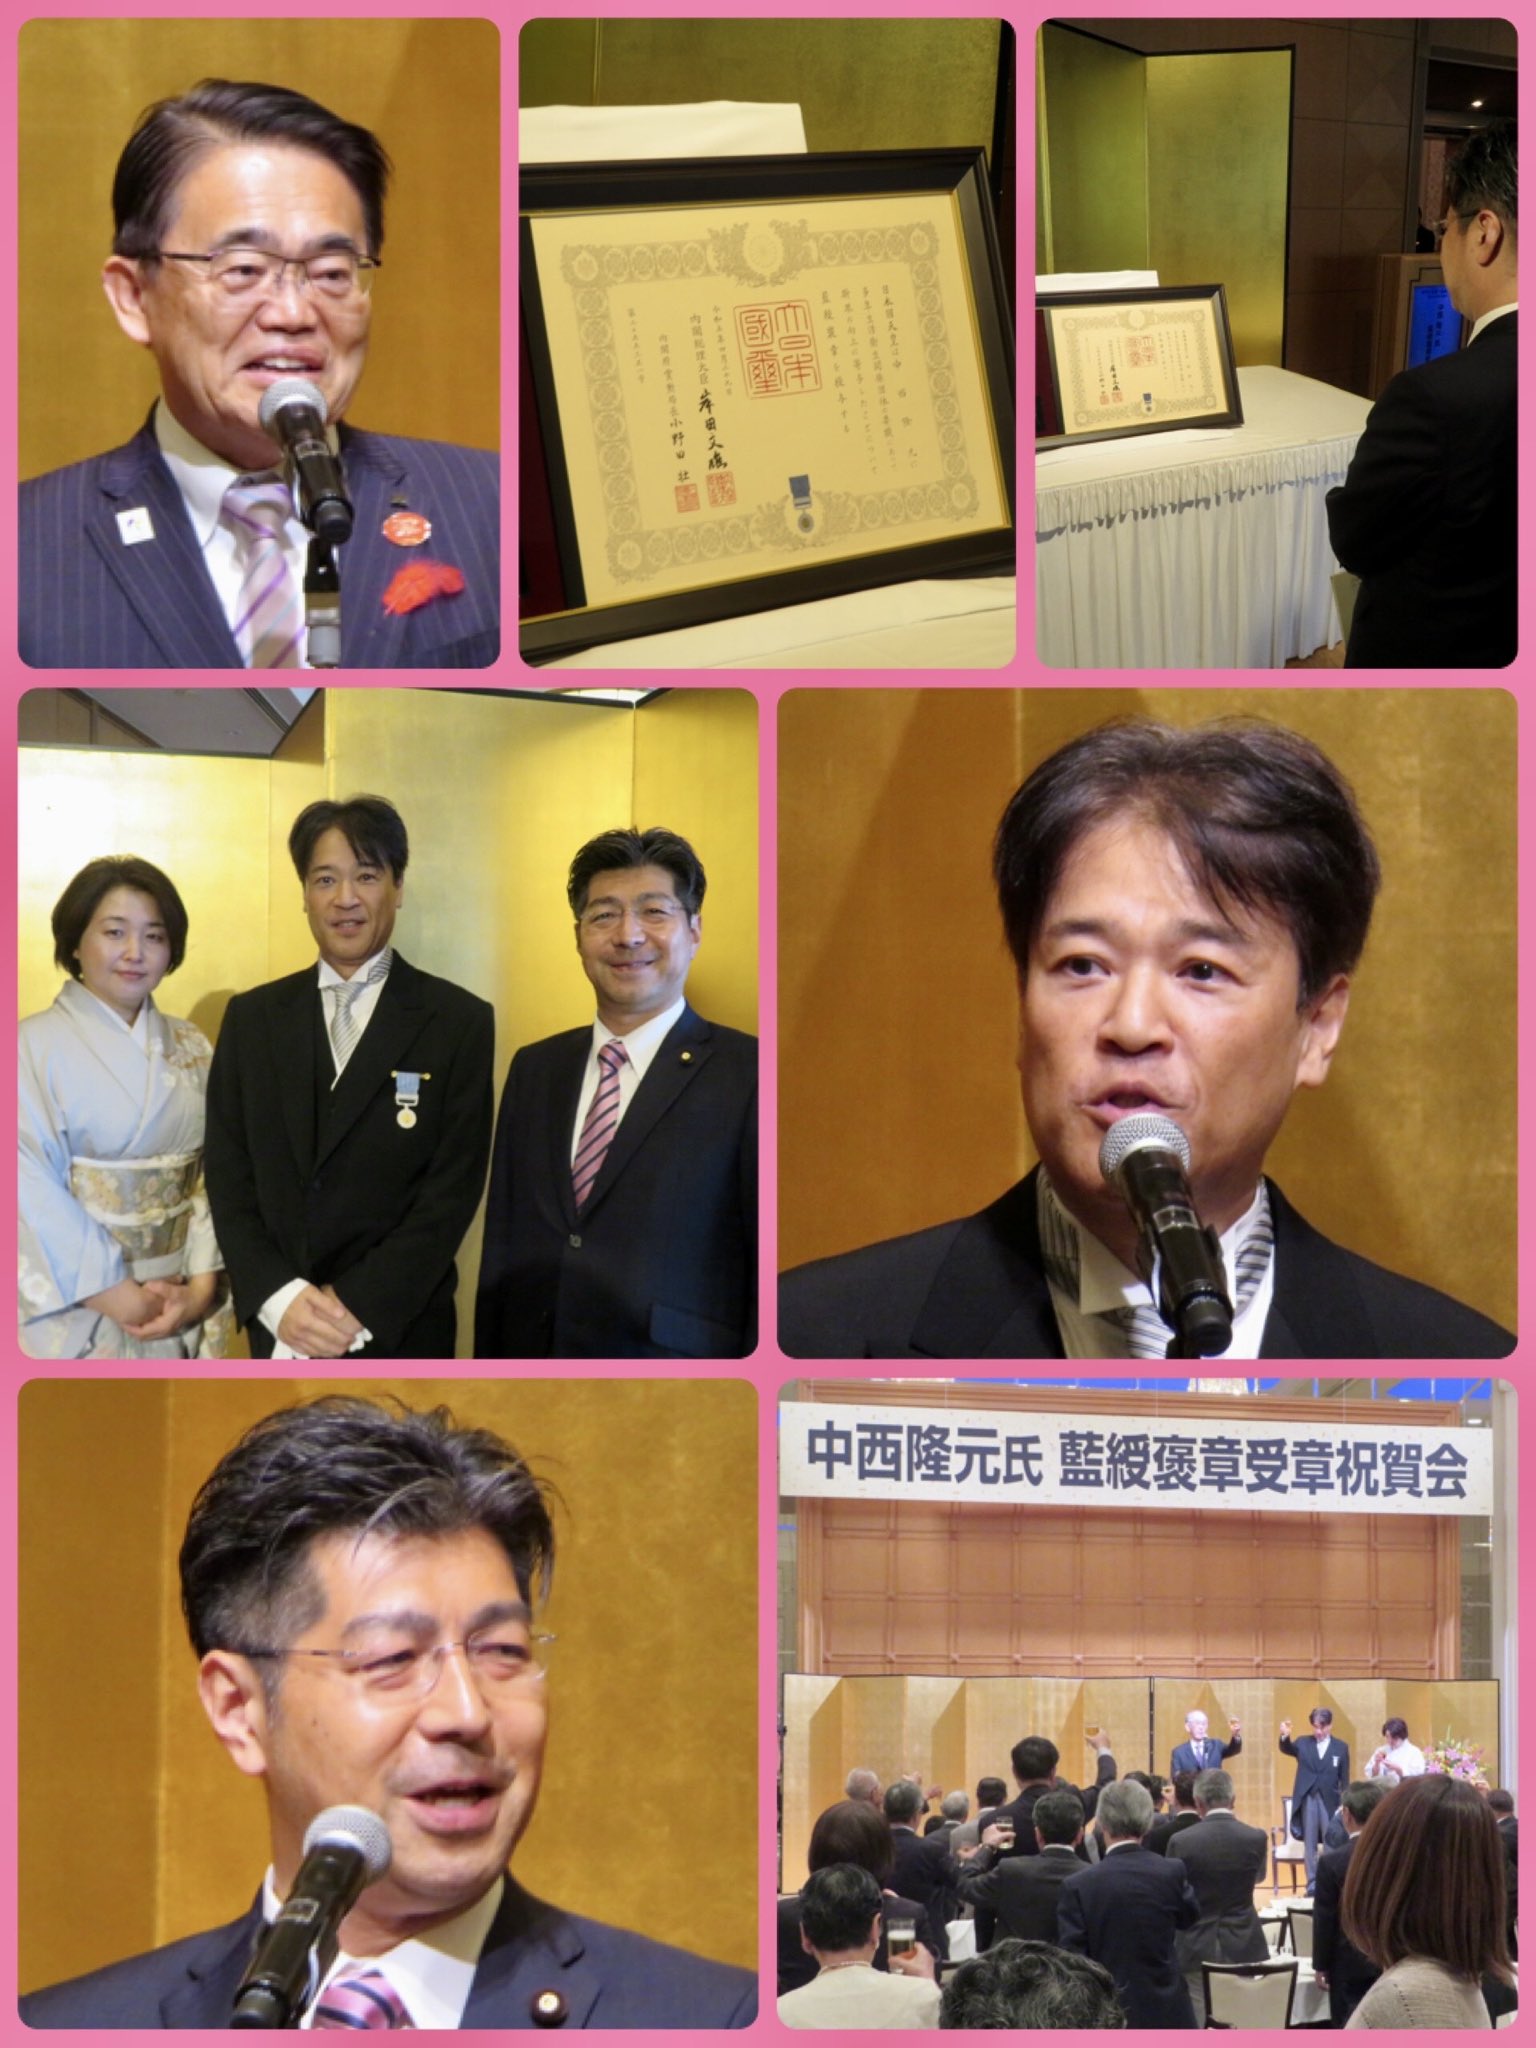 中西隆元さんの藍綬褒章受章祝賀会で祝辞